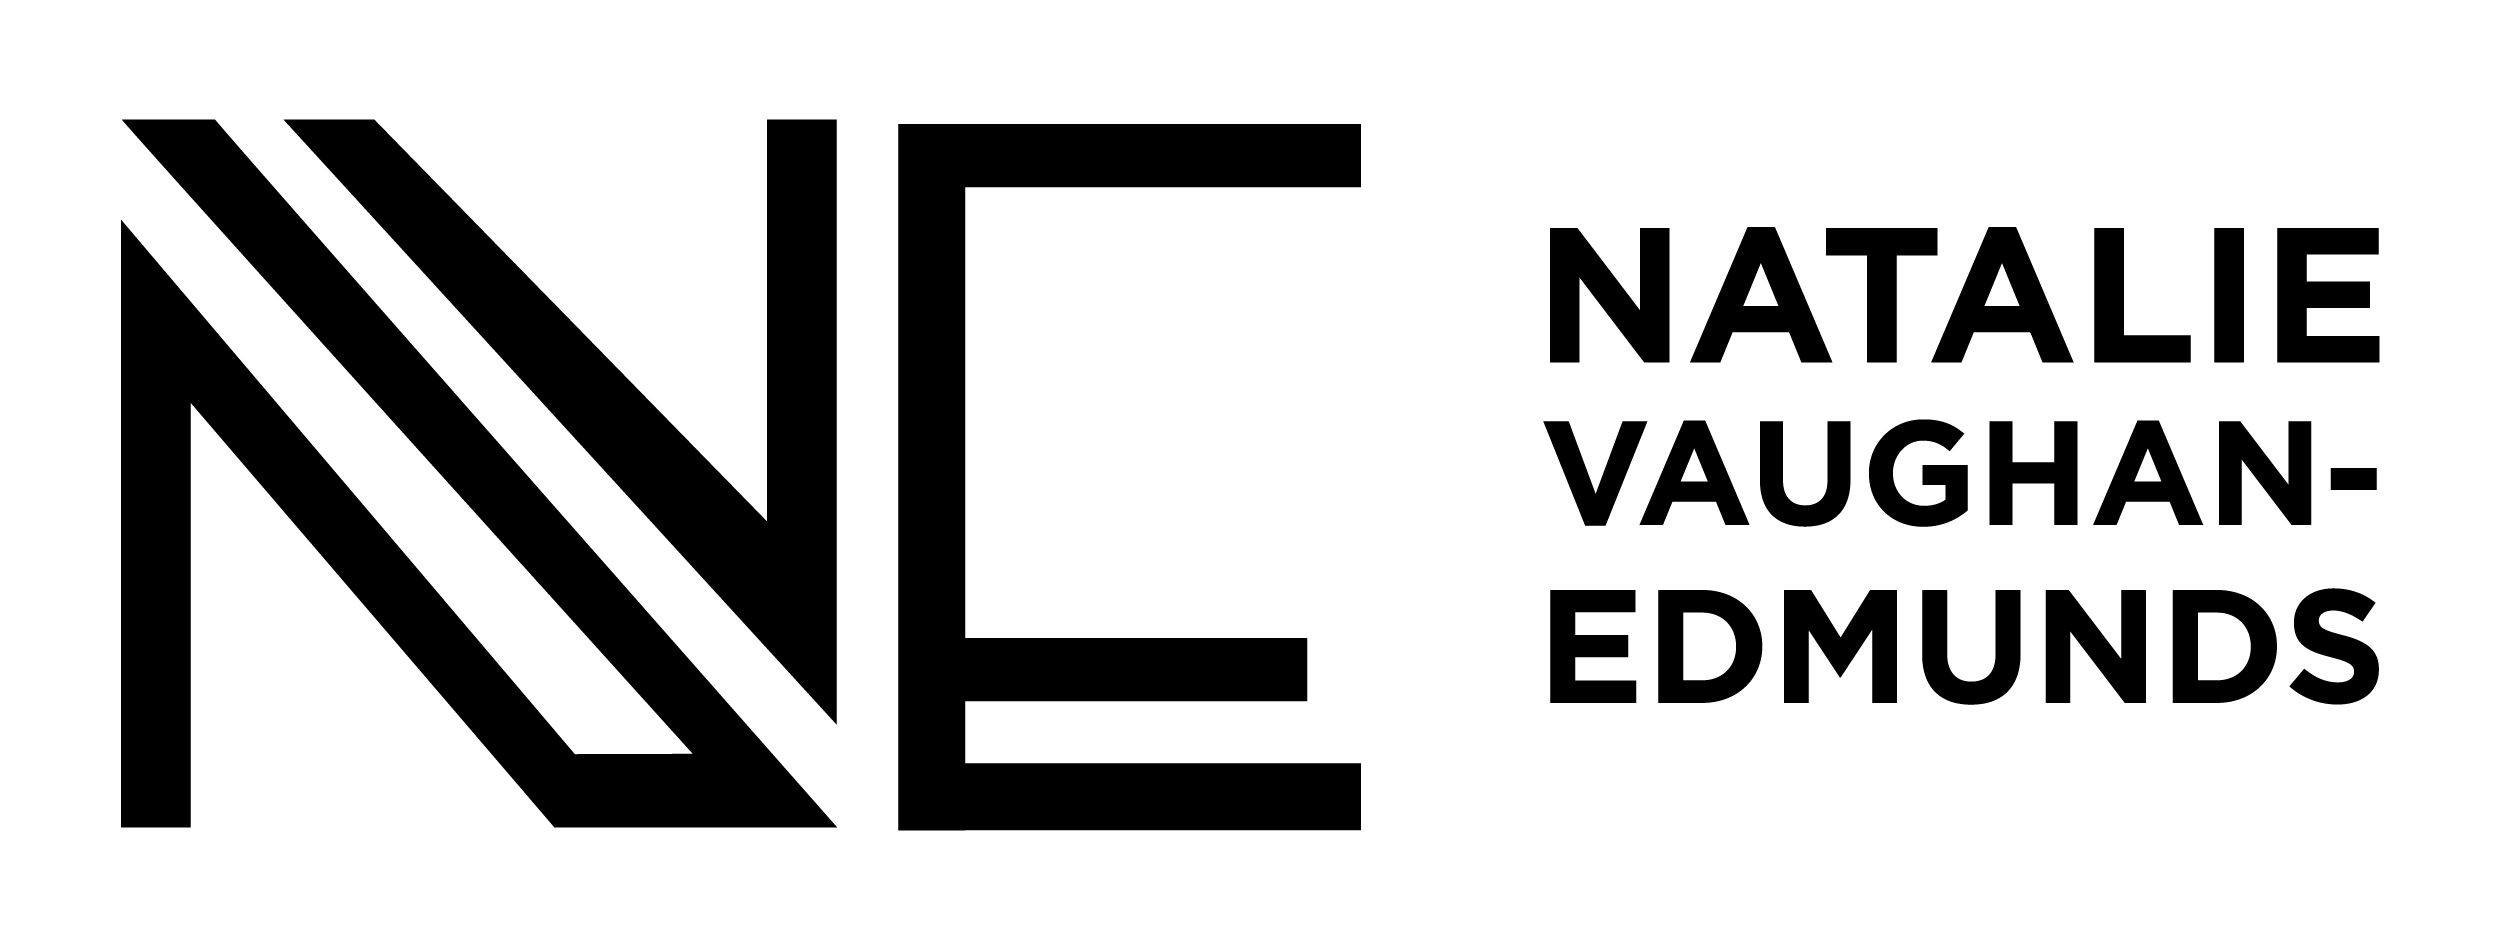 A text banner describing Natalie Vaughan-Edmunds